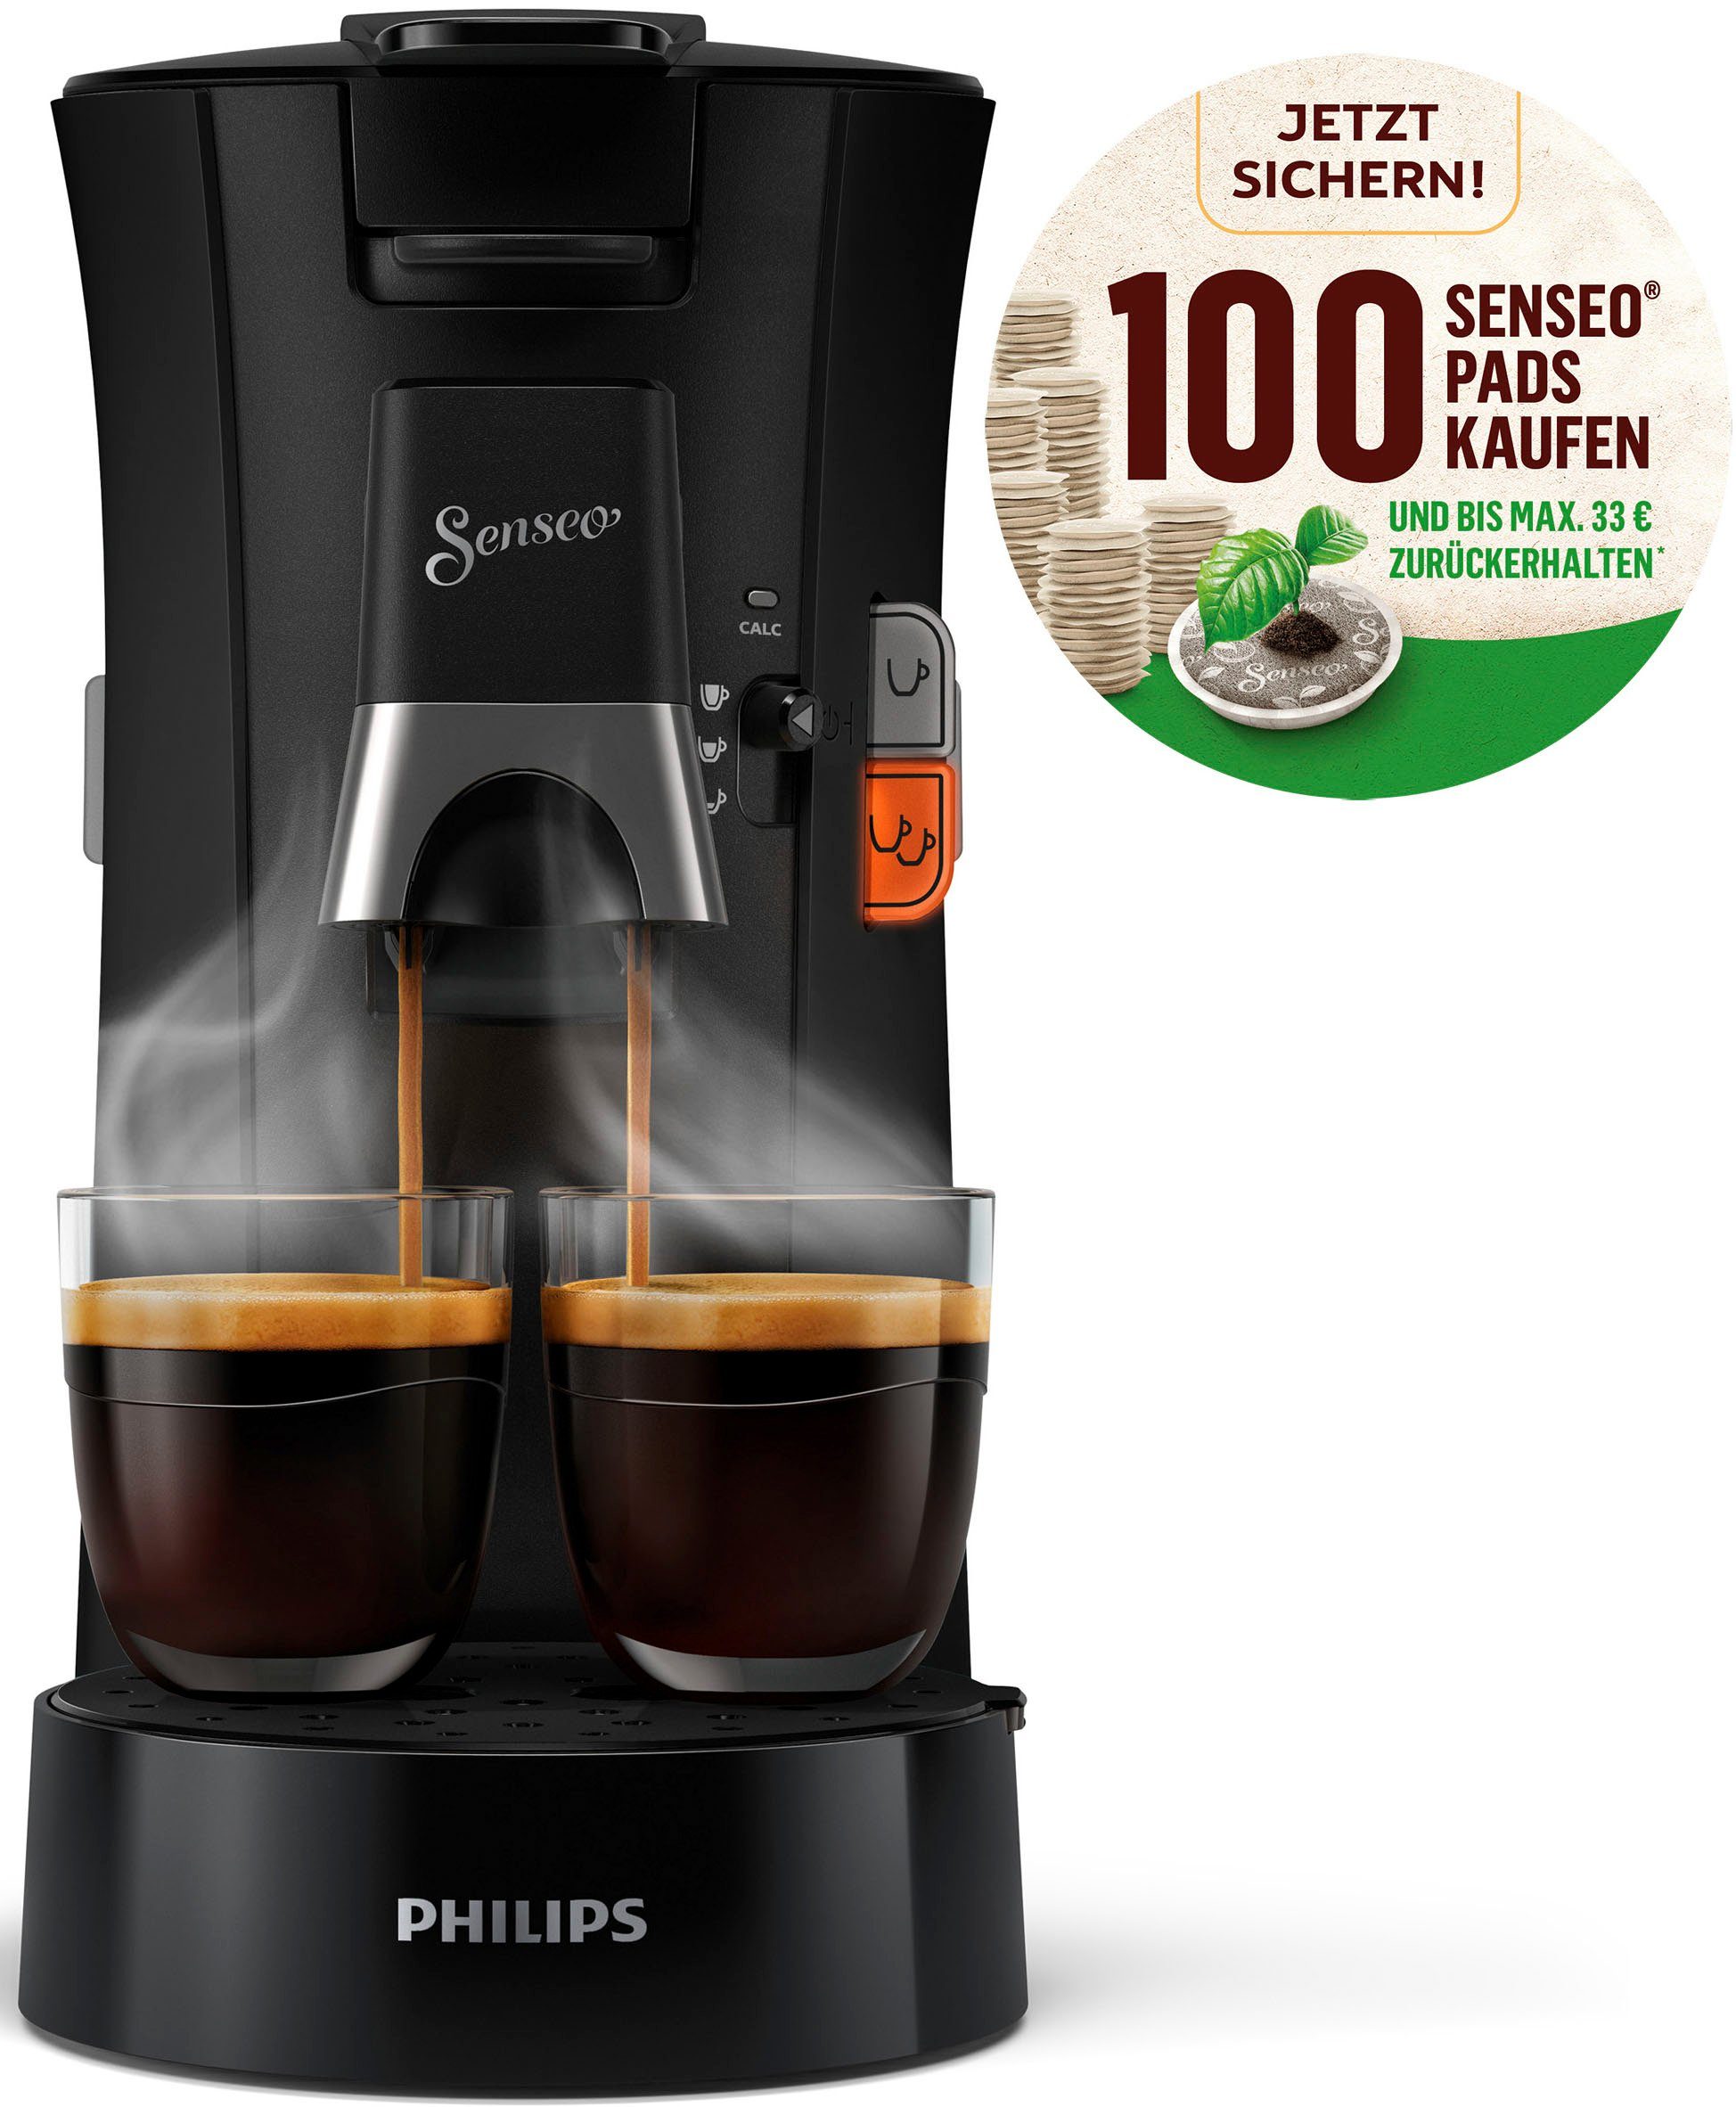 Philips Senseo Kaffeepadmaschine Select CSA230/69, aus 21% recyceltem Plastik, Crema Plus, 100 Senseo Pads kaufen und bis zu 33 € zurückerhalten